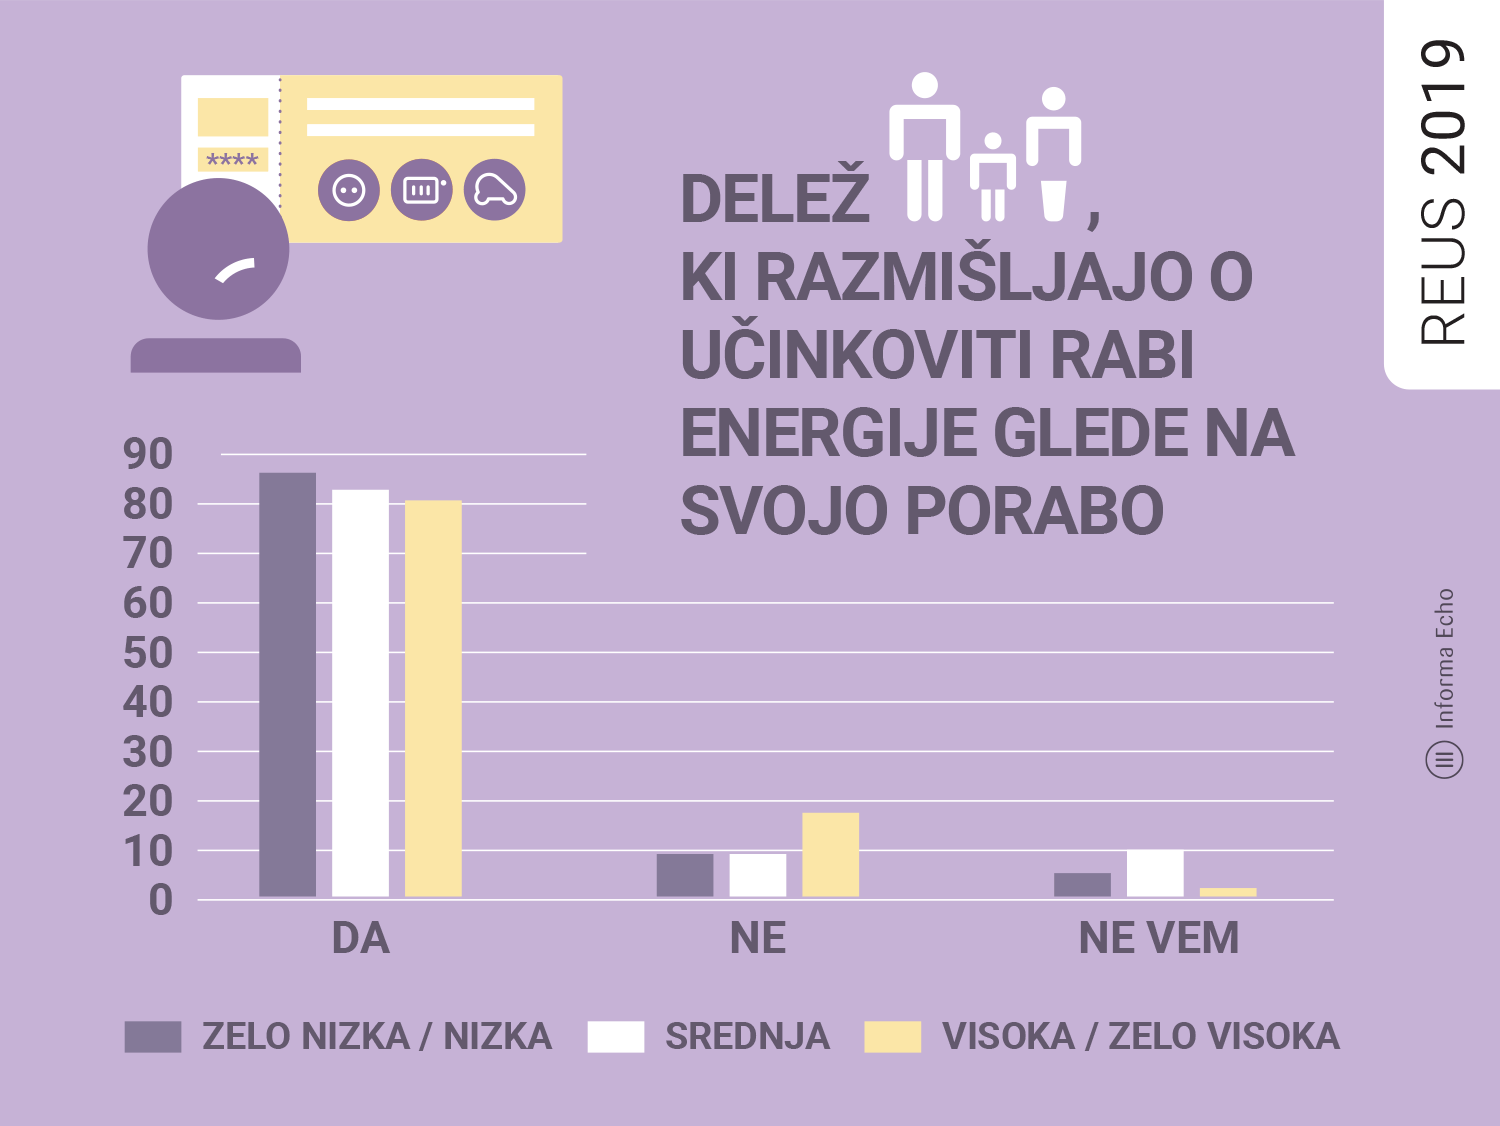 Delež godpodinjstev, ki razmišljajo o učinkoviti rabi energije / Raziskava REUS / Ilustracija: Branko Baćović